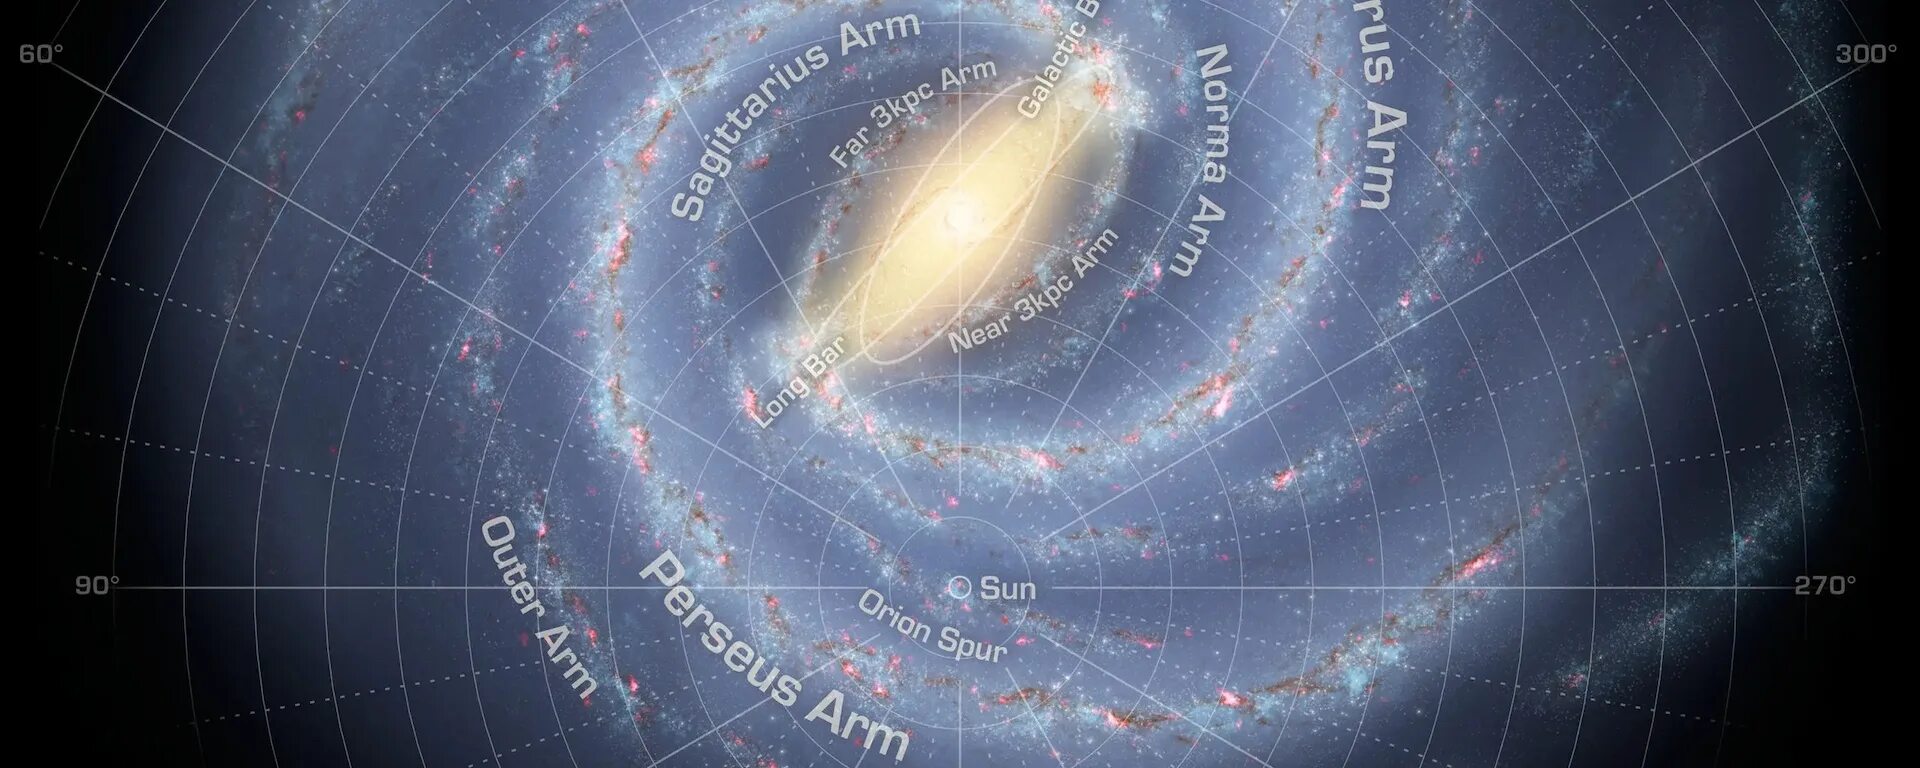 Место земли в галактике Млечный путь. Карта Галактики Млечный путь. Солнце в галактике Млечный путь. Наше место в галактике Млечный путь.